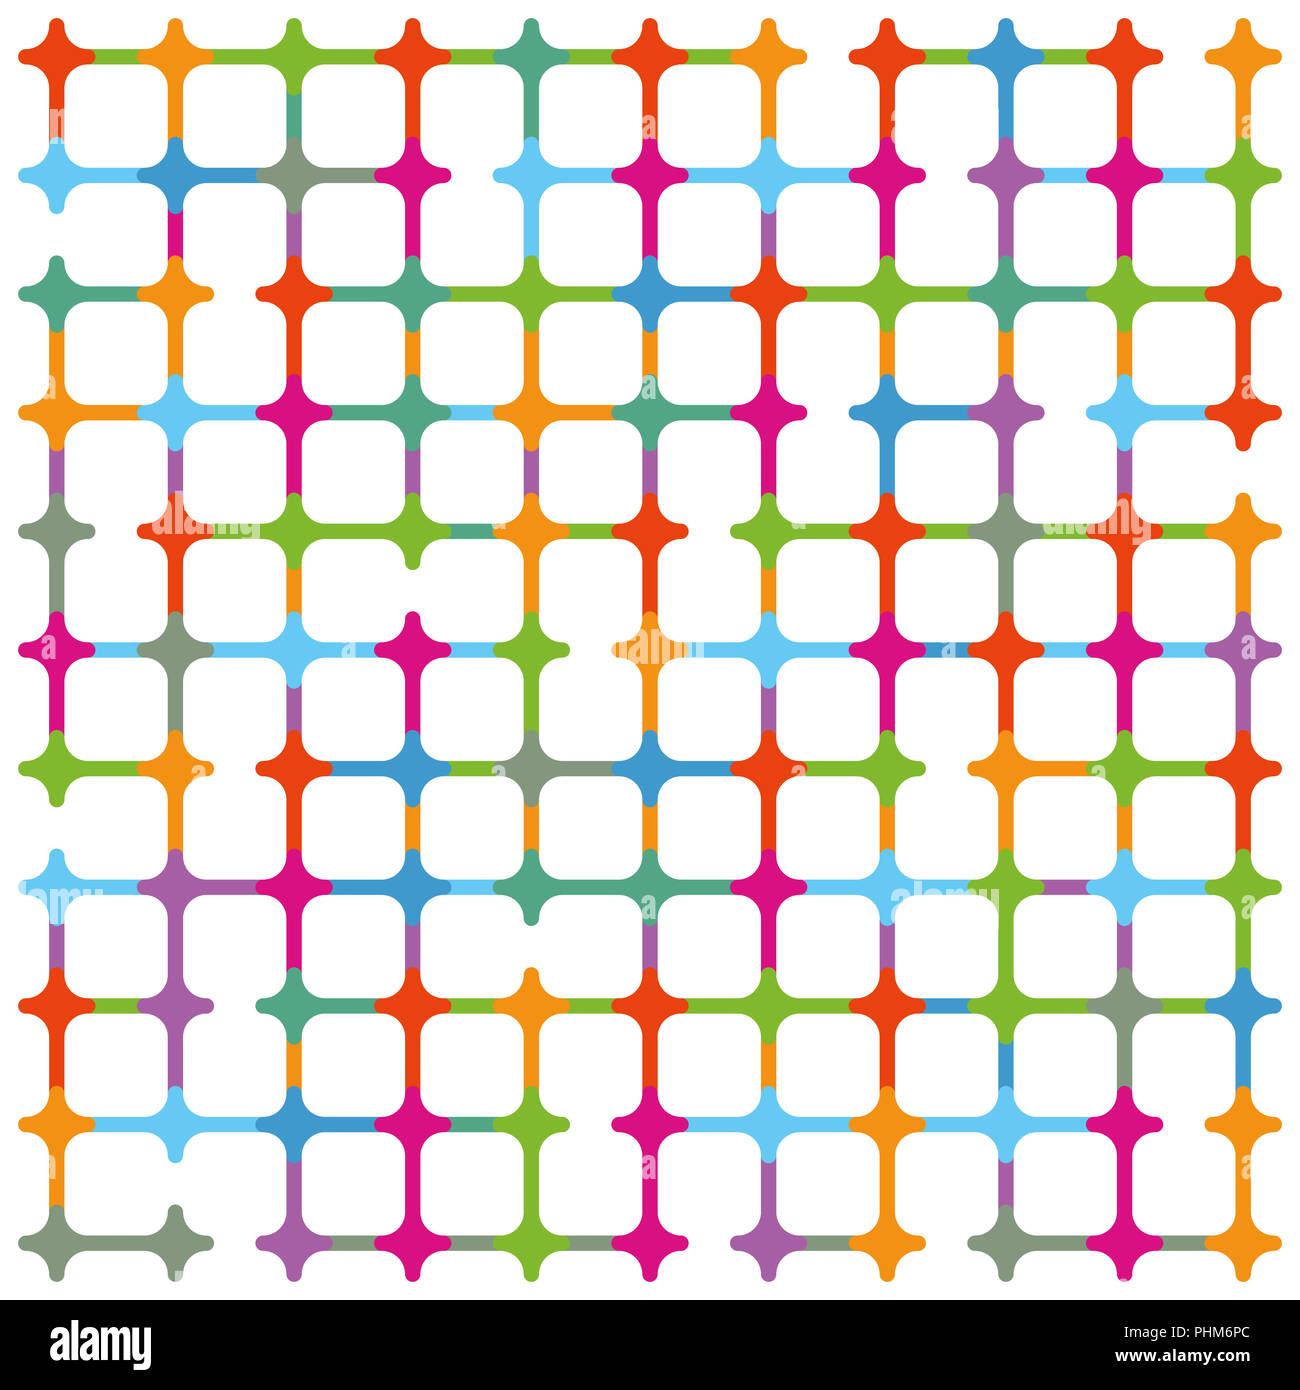 Geometric colorful background illustration Stock Photo